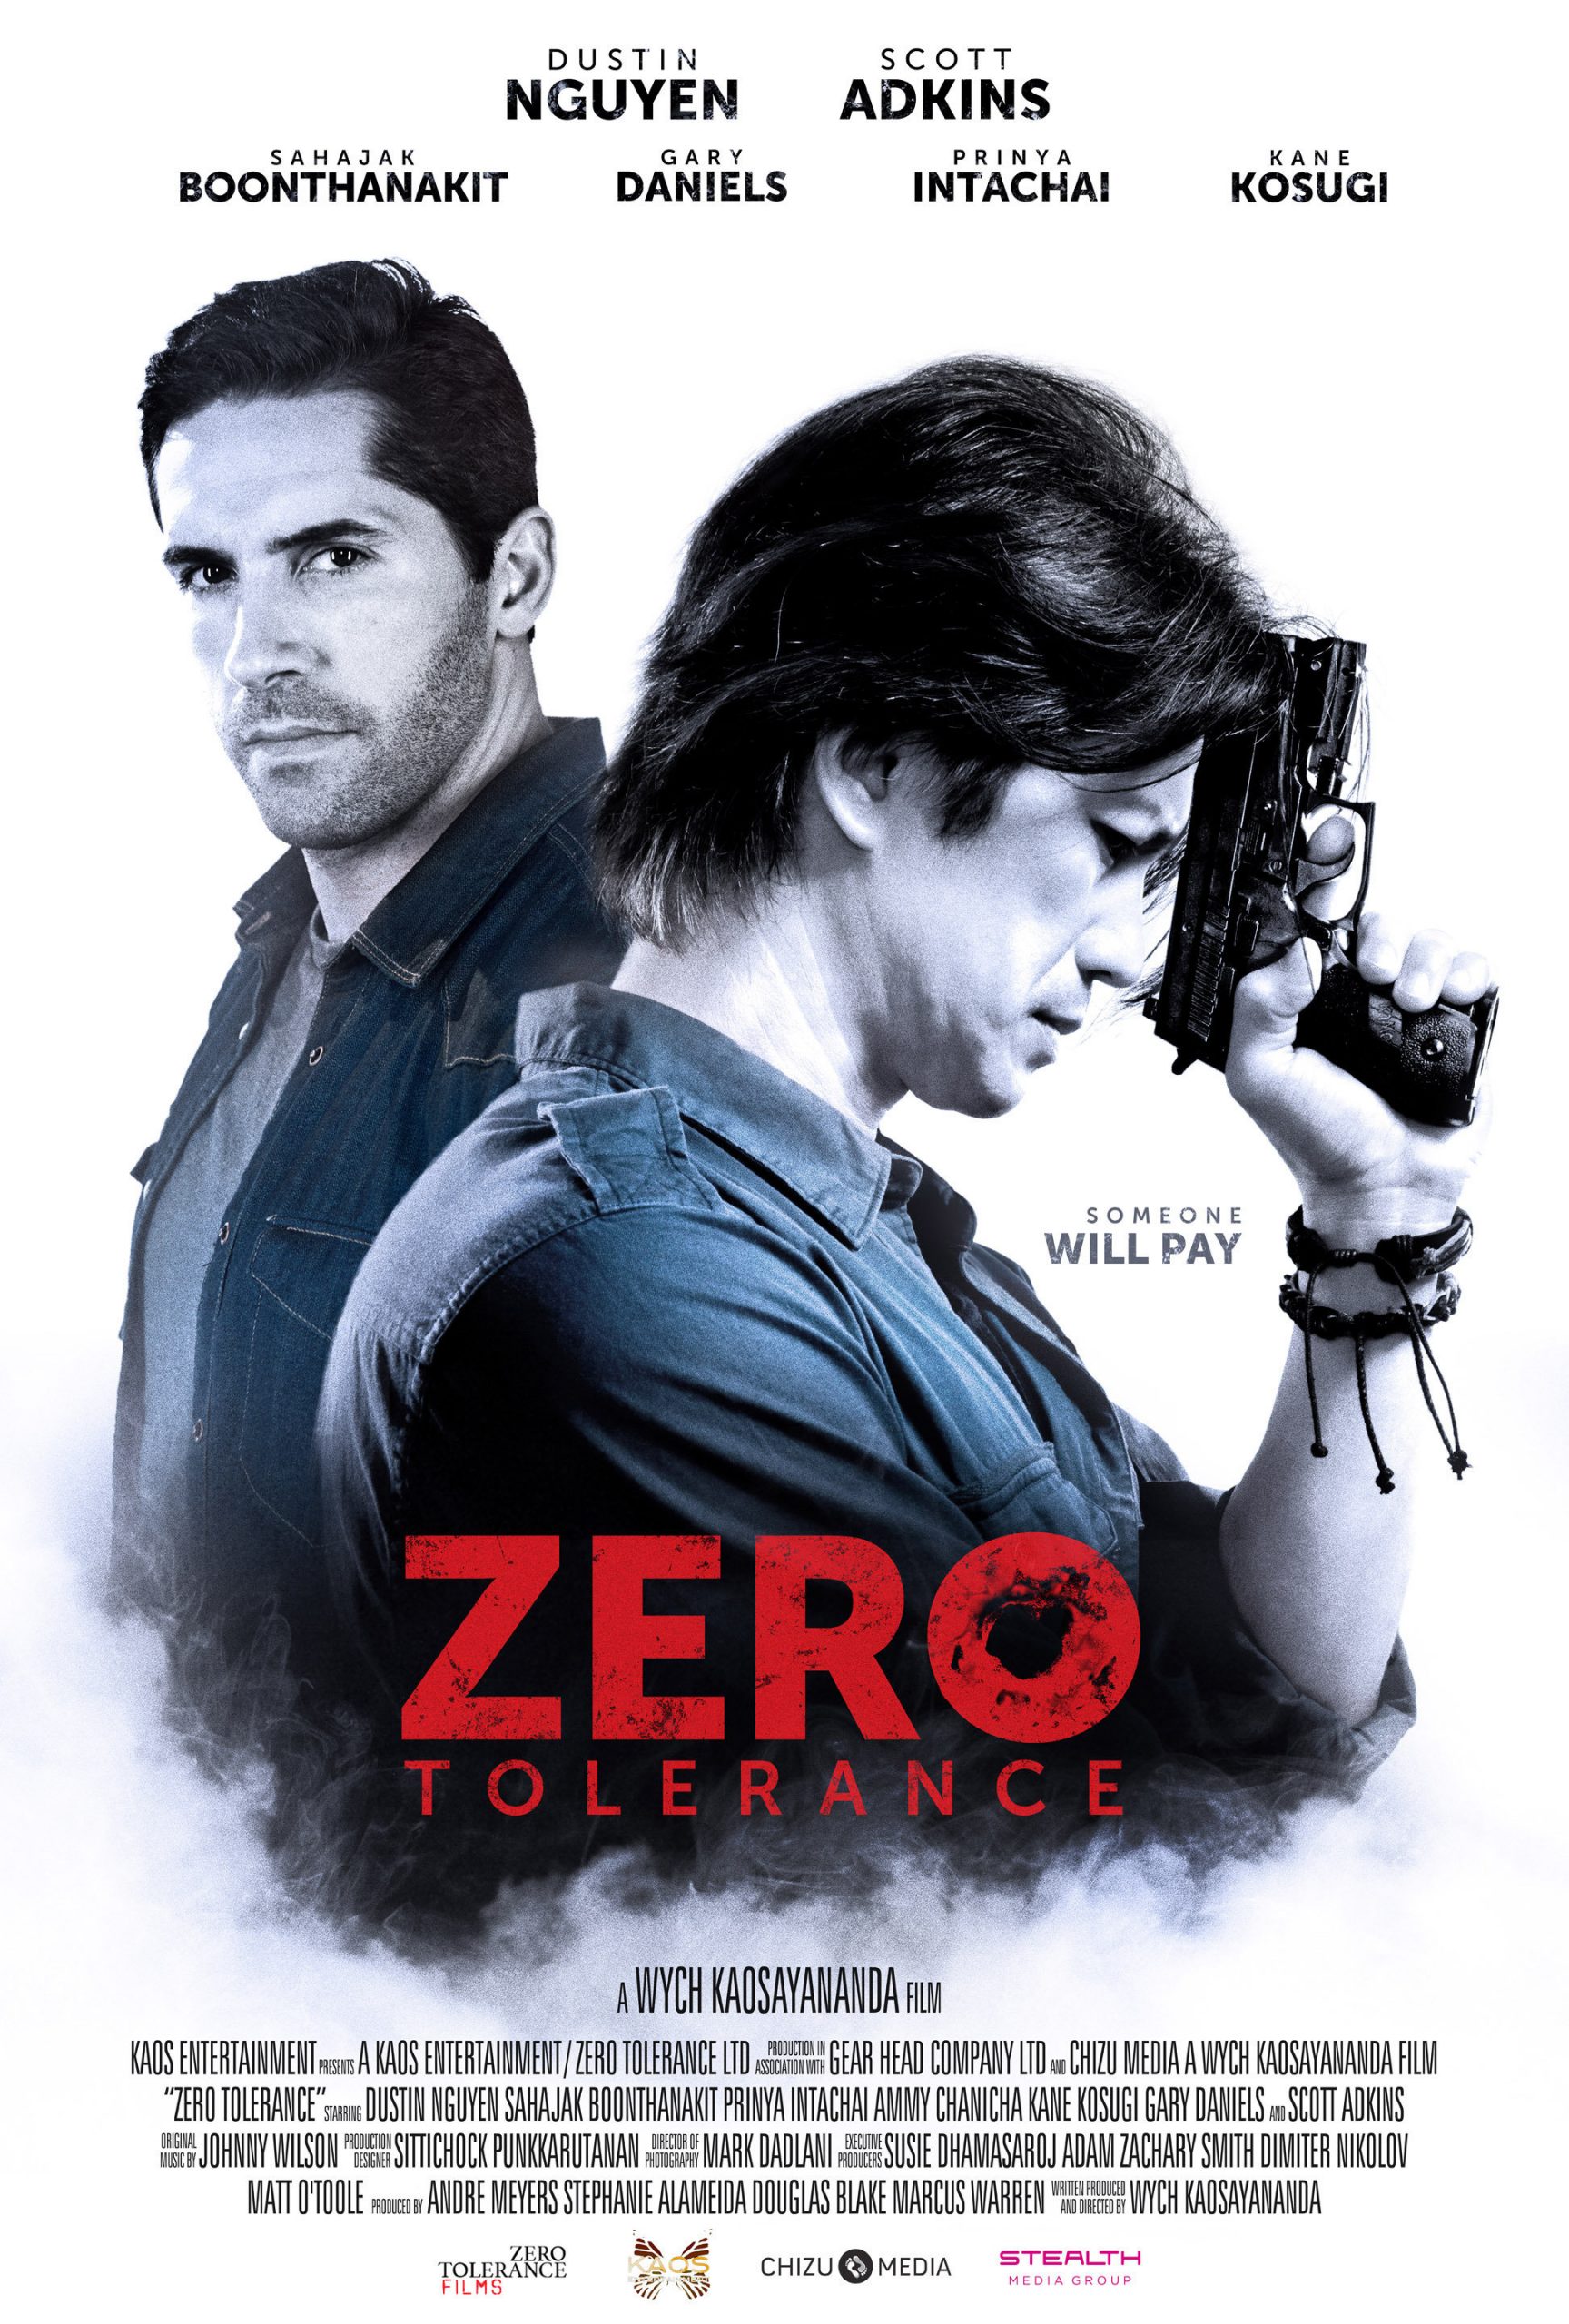 ดูหนังออนไลน์ฟรี Zero Tolerance (2015) ปิดกรุงเทพล่าอำมหิต หนังเต็มเรื่อง หนังมาสเตอร์ ดูหนังHD ดูหนังออนไลน์ ดูหนังใหม่